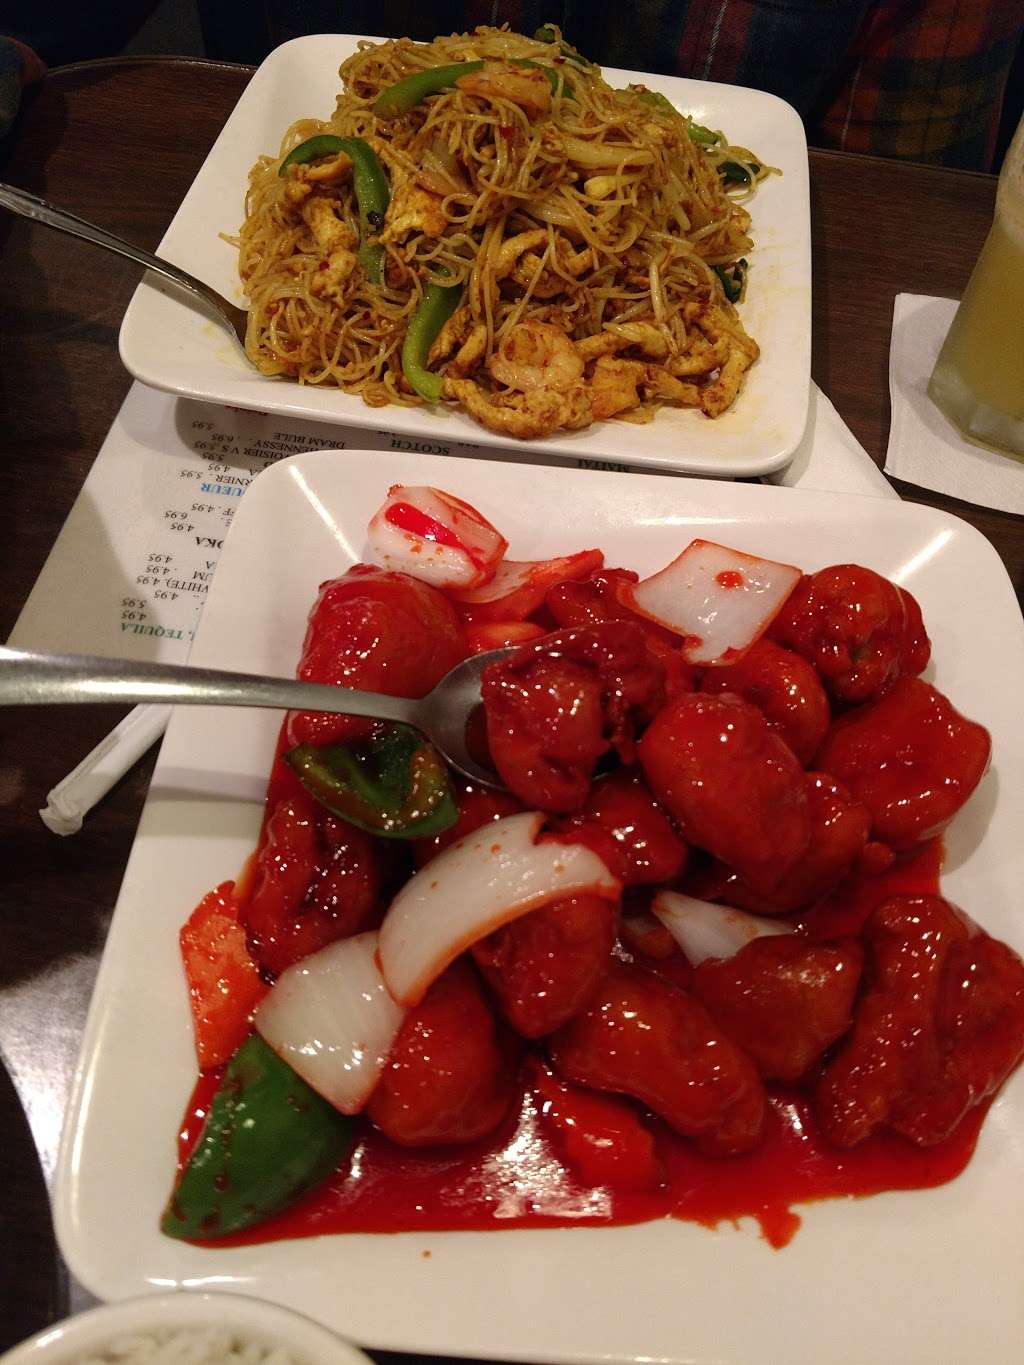 Hunan Taste Restaurant | 8088 Rolling Rd, Springfield, VA 22153 | Phone: (703) 455-1818